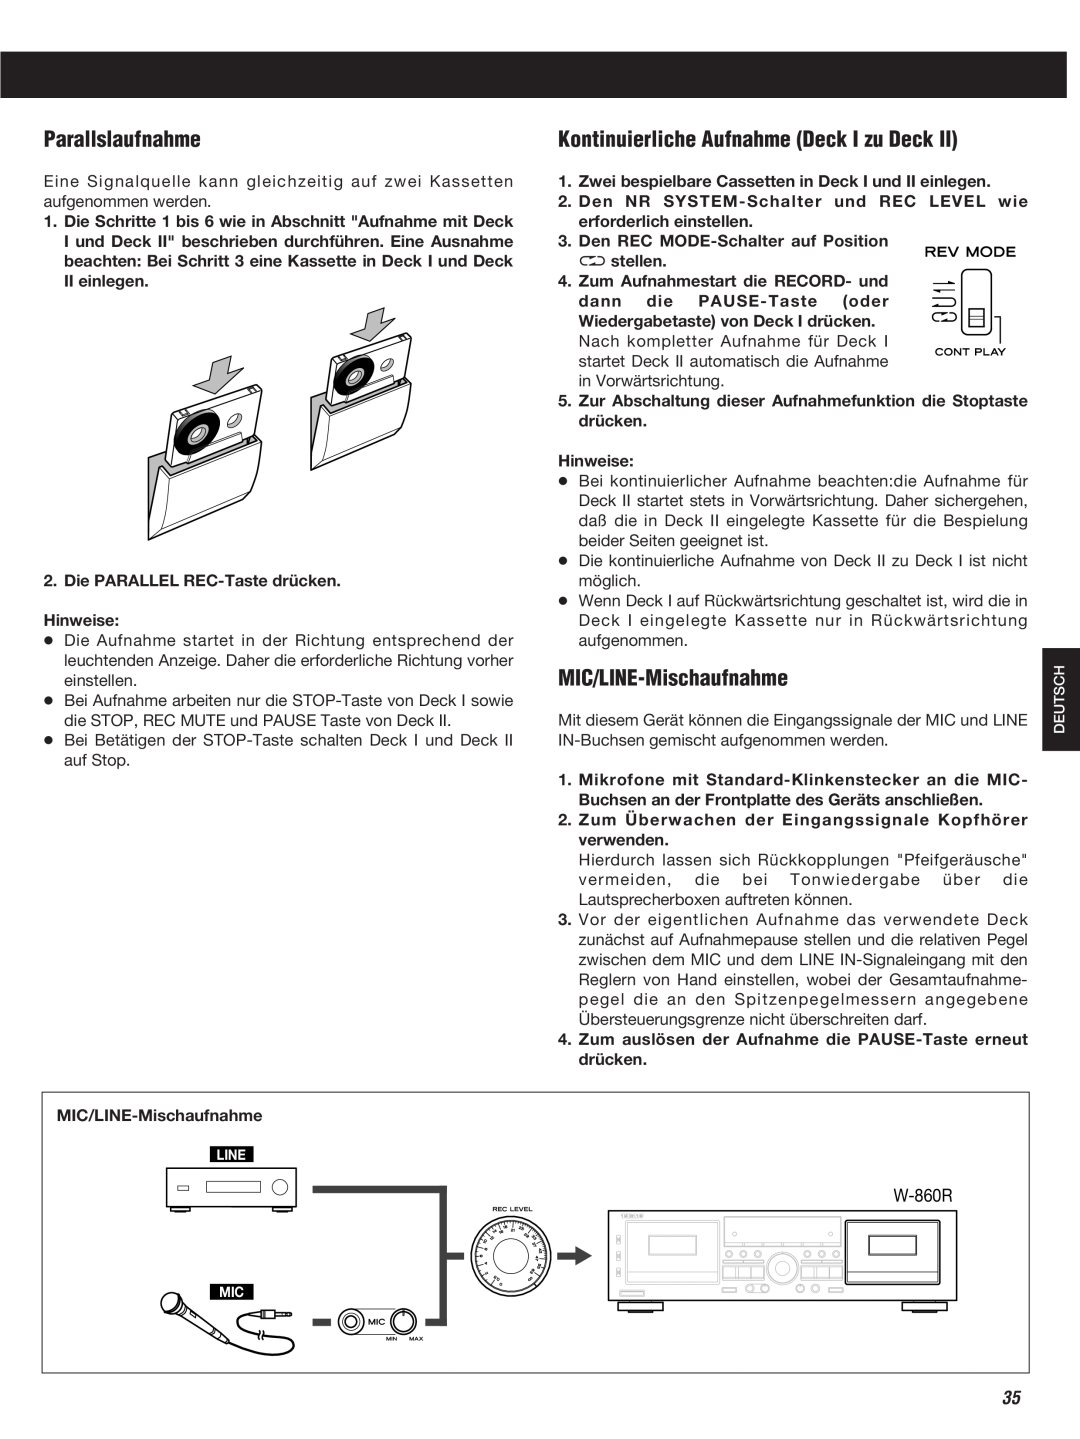 Teac W-860R owner manual Parallslaufnahme, Kontinuierliche Aufnahme Deck I zu Deck, MIC/LINE-Mischaufnahme 